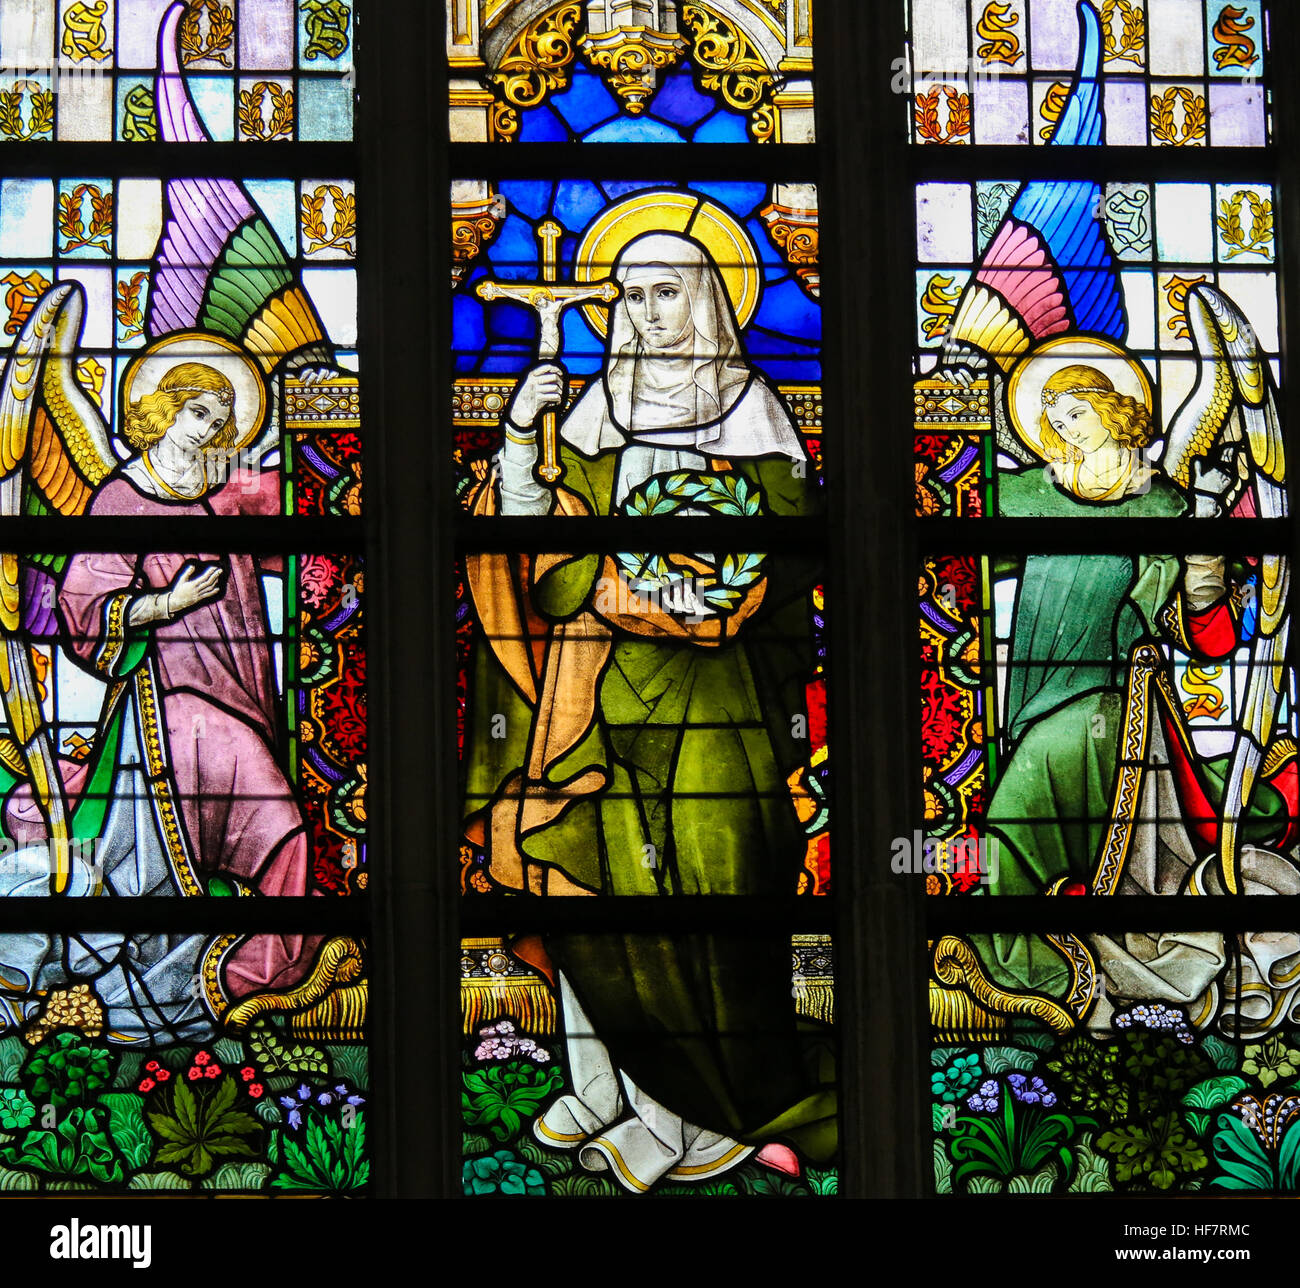 Glasmalerei-Fenster Darstellung Saint Vinciana, einem frühen Christian Heiligen, in der Kathedrale St. Bavo in Gent, Flandern, Belgien. Stockfoto